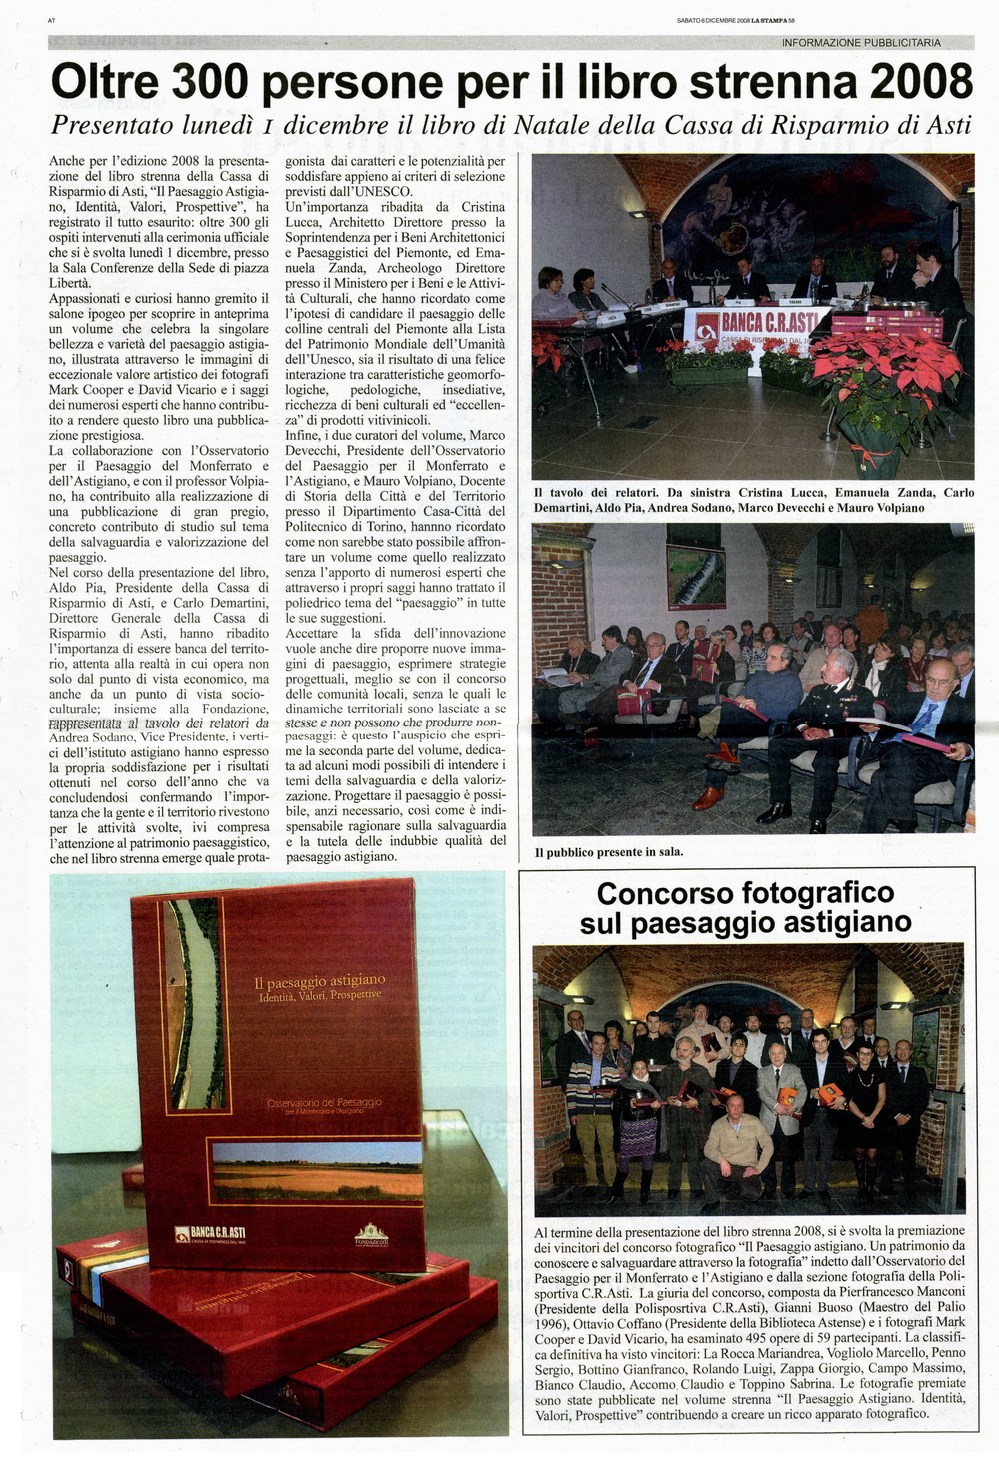  La Stampa (Sabato 6 dicembre 2008)